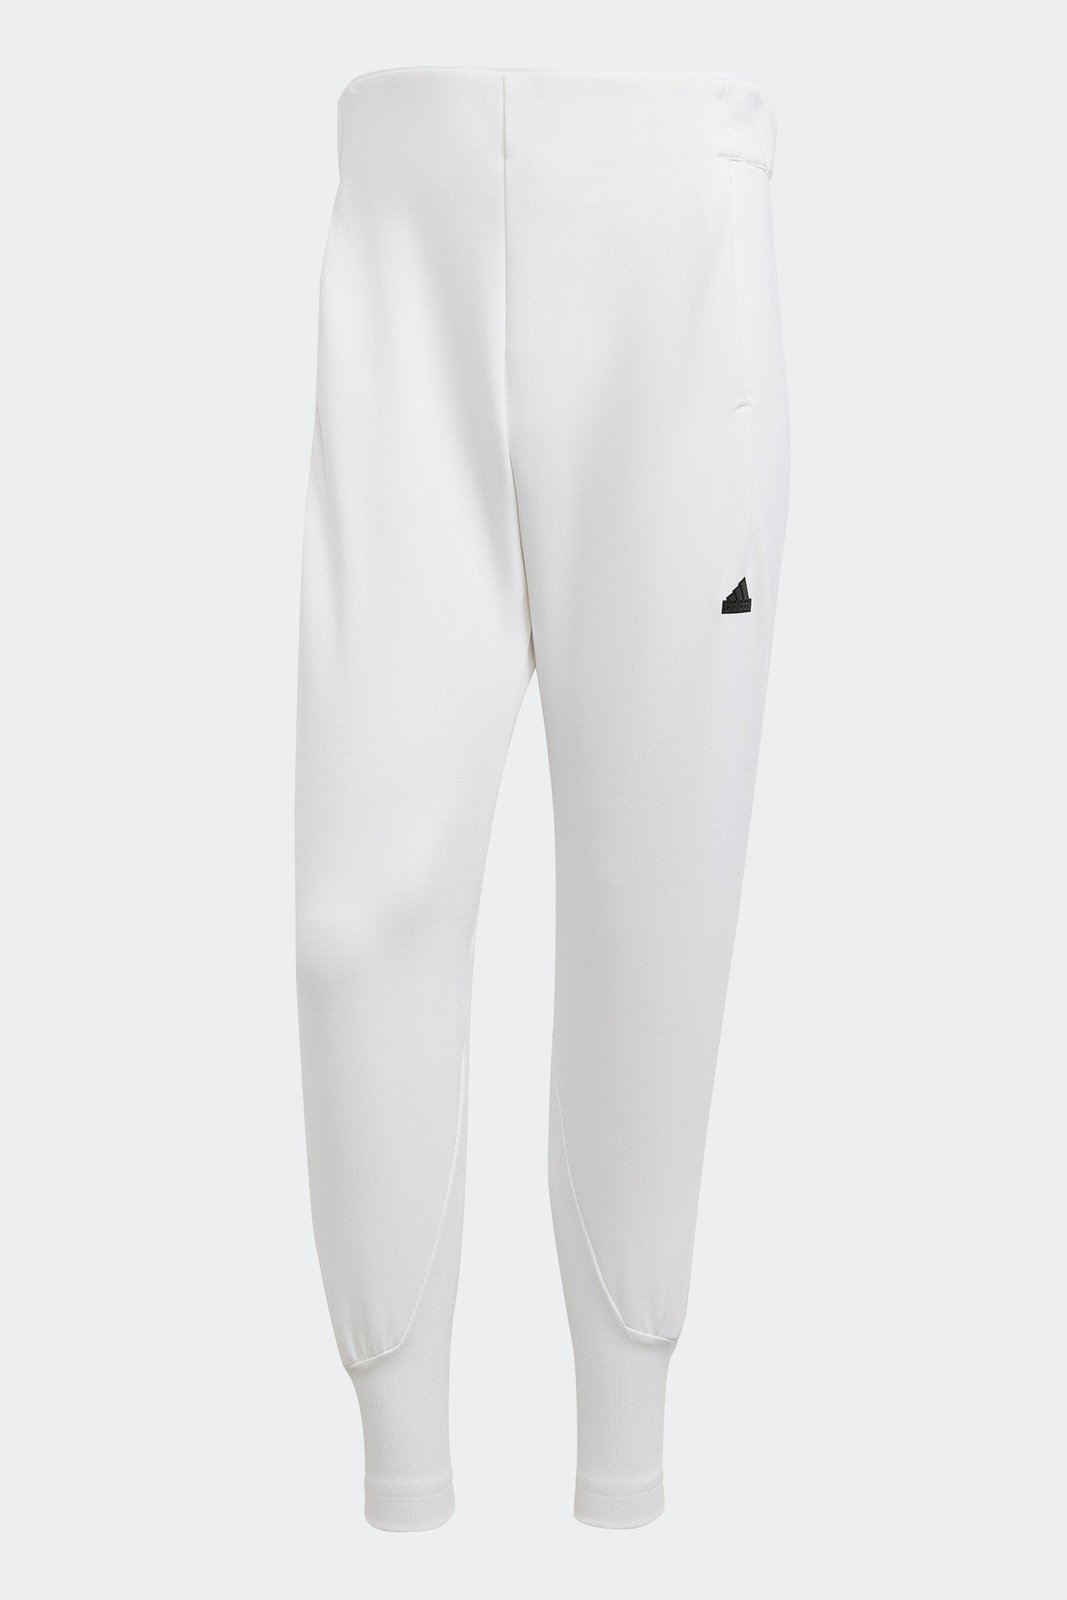 ADIDAS - מכנסיים ארוכים לנשים Z.N.E בצבע לבן - MASHBIR//365